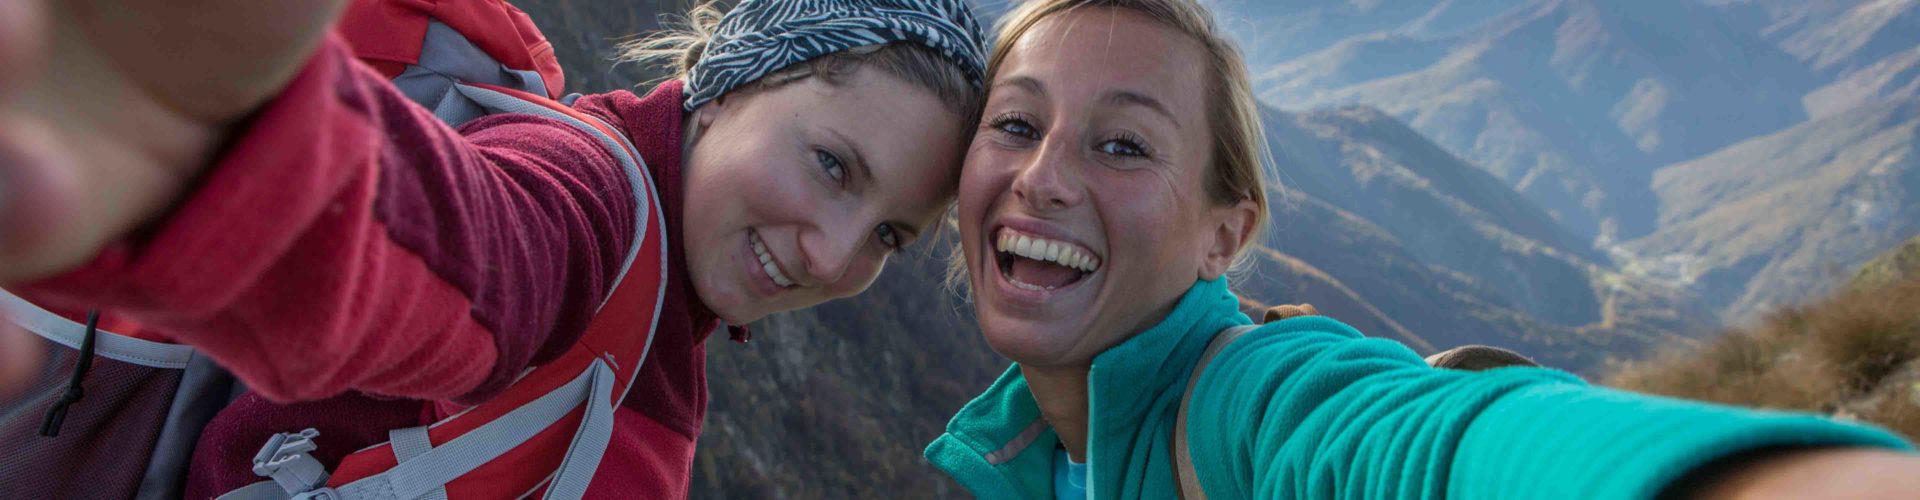 two happy women taking a selfie on a hike